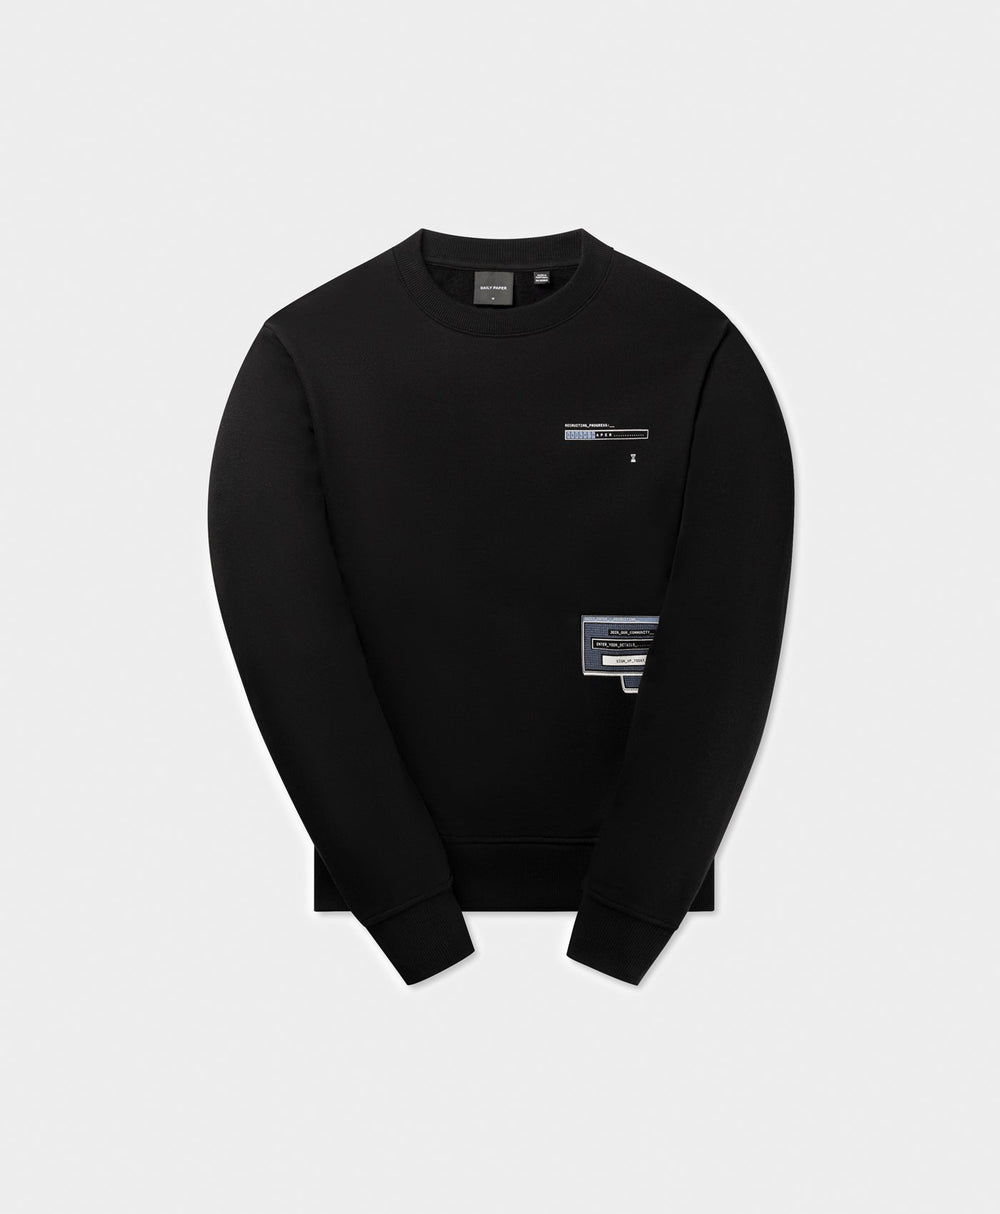 DP - Black Pop Up Sweater - Packshot - front 